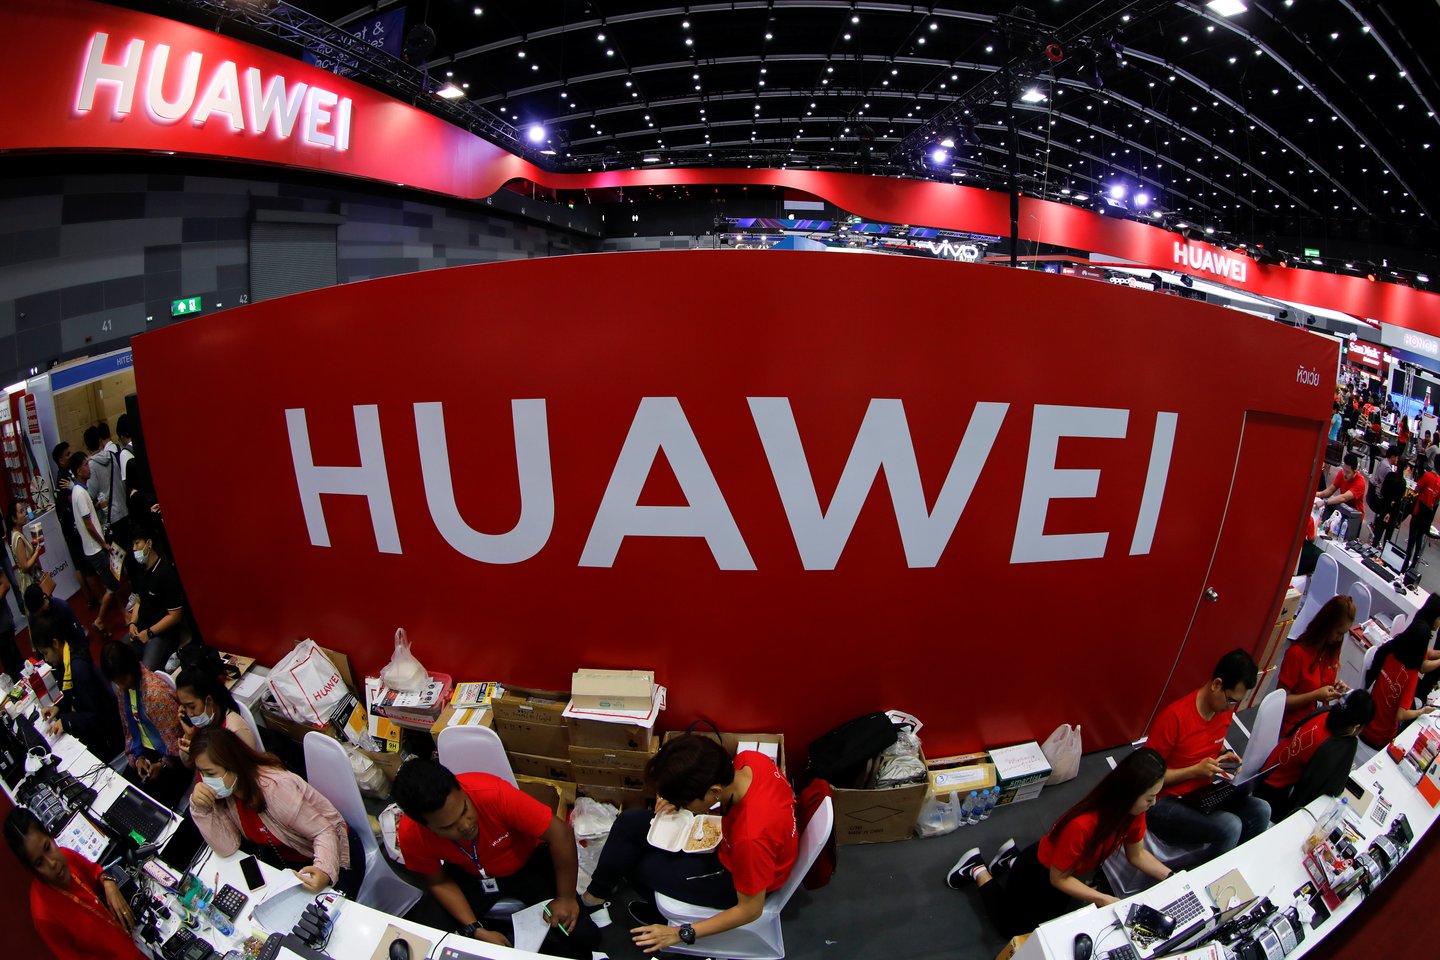 5G ryšys naudojamas įvairiausiose srityse. „Huawei“ į mokslinių tyrimų ir plėtros sritį investuoja 14 proc. įmonės pajamų. Šioje srityje dirba 45 proc. įmonės darbuotojų, technologija pristatoma ir žmonėms.<br>Reuters/Scanpix nuotr.